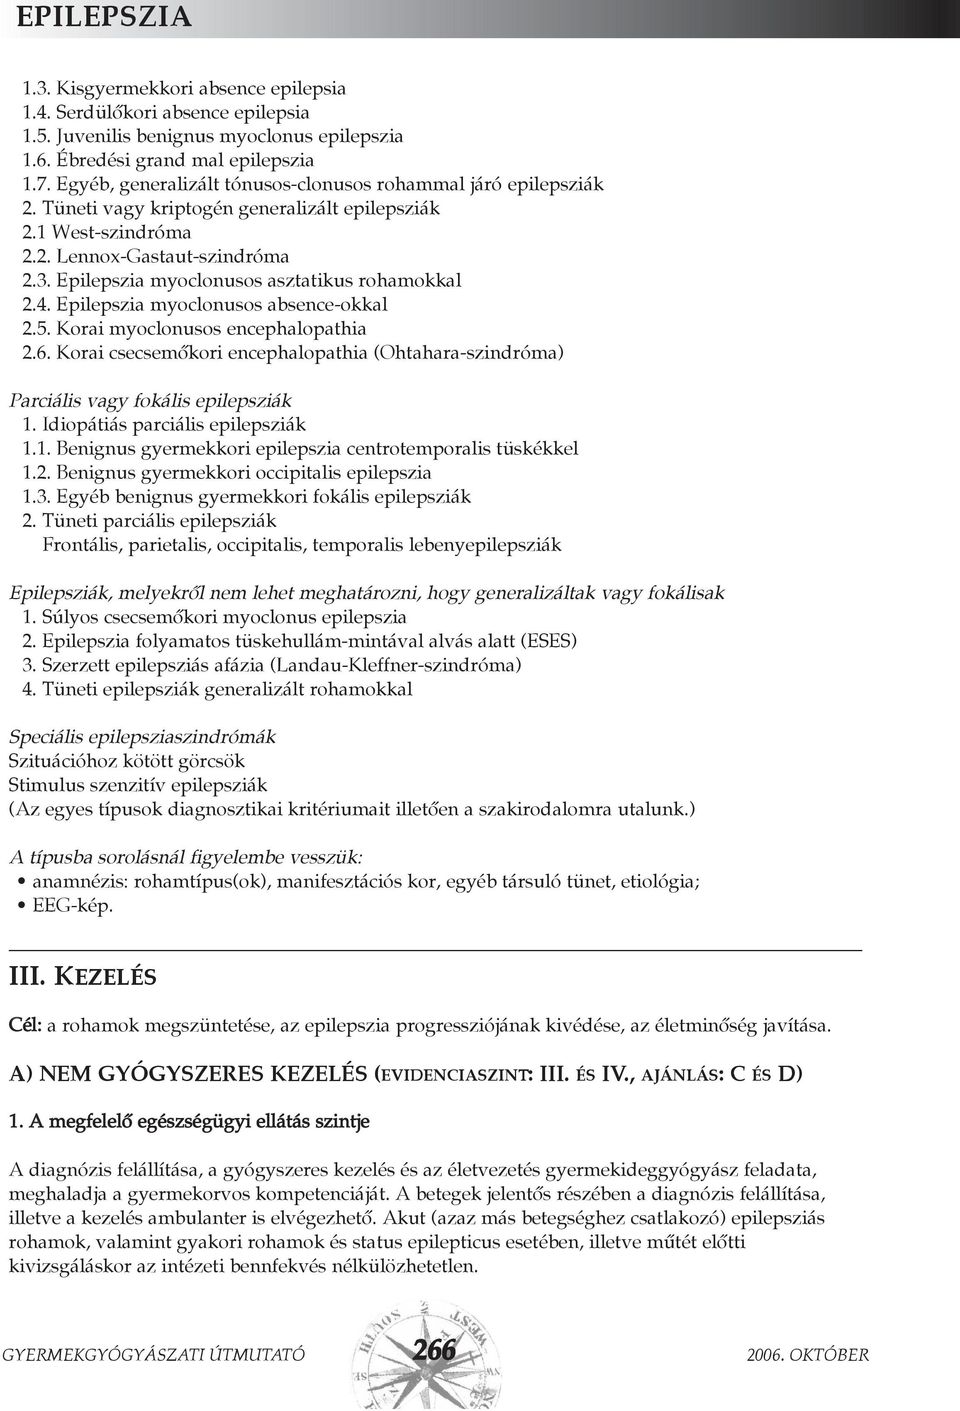 Epilepszia myoclonusos asztatikus rohamokkal 2.4. Epilepszia myoclonusos absence-okkal 2.5. Korai myoclonusos encephalopathia 2.6.